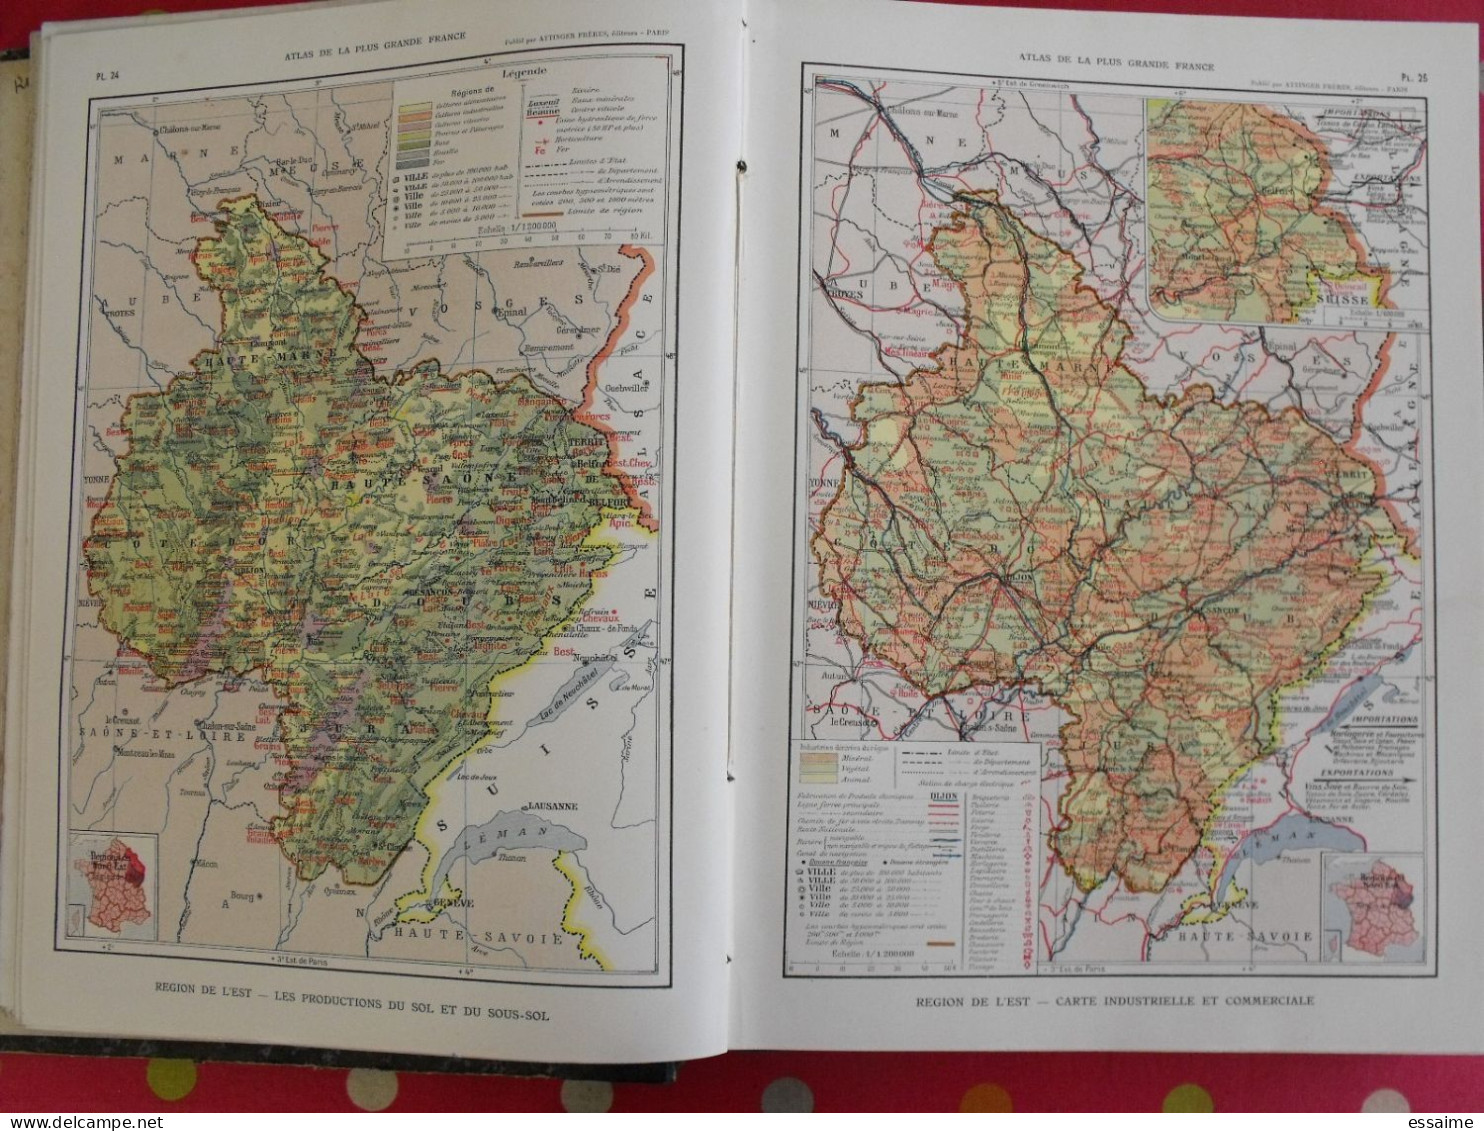 atlas de la plus grande France. onésime Reclus. Attinger frères, 1911. géographie colonies indochine maroc algérie